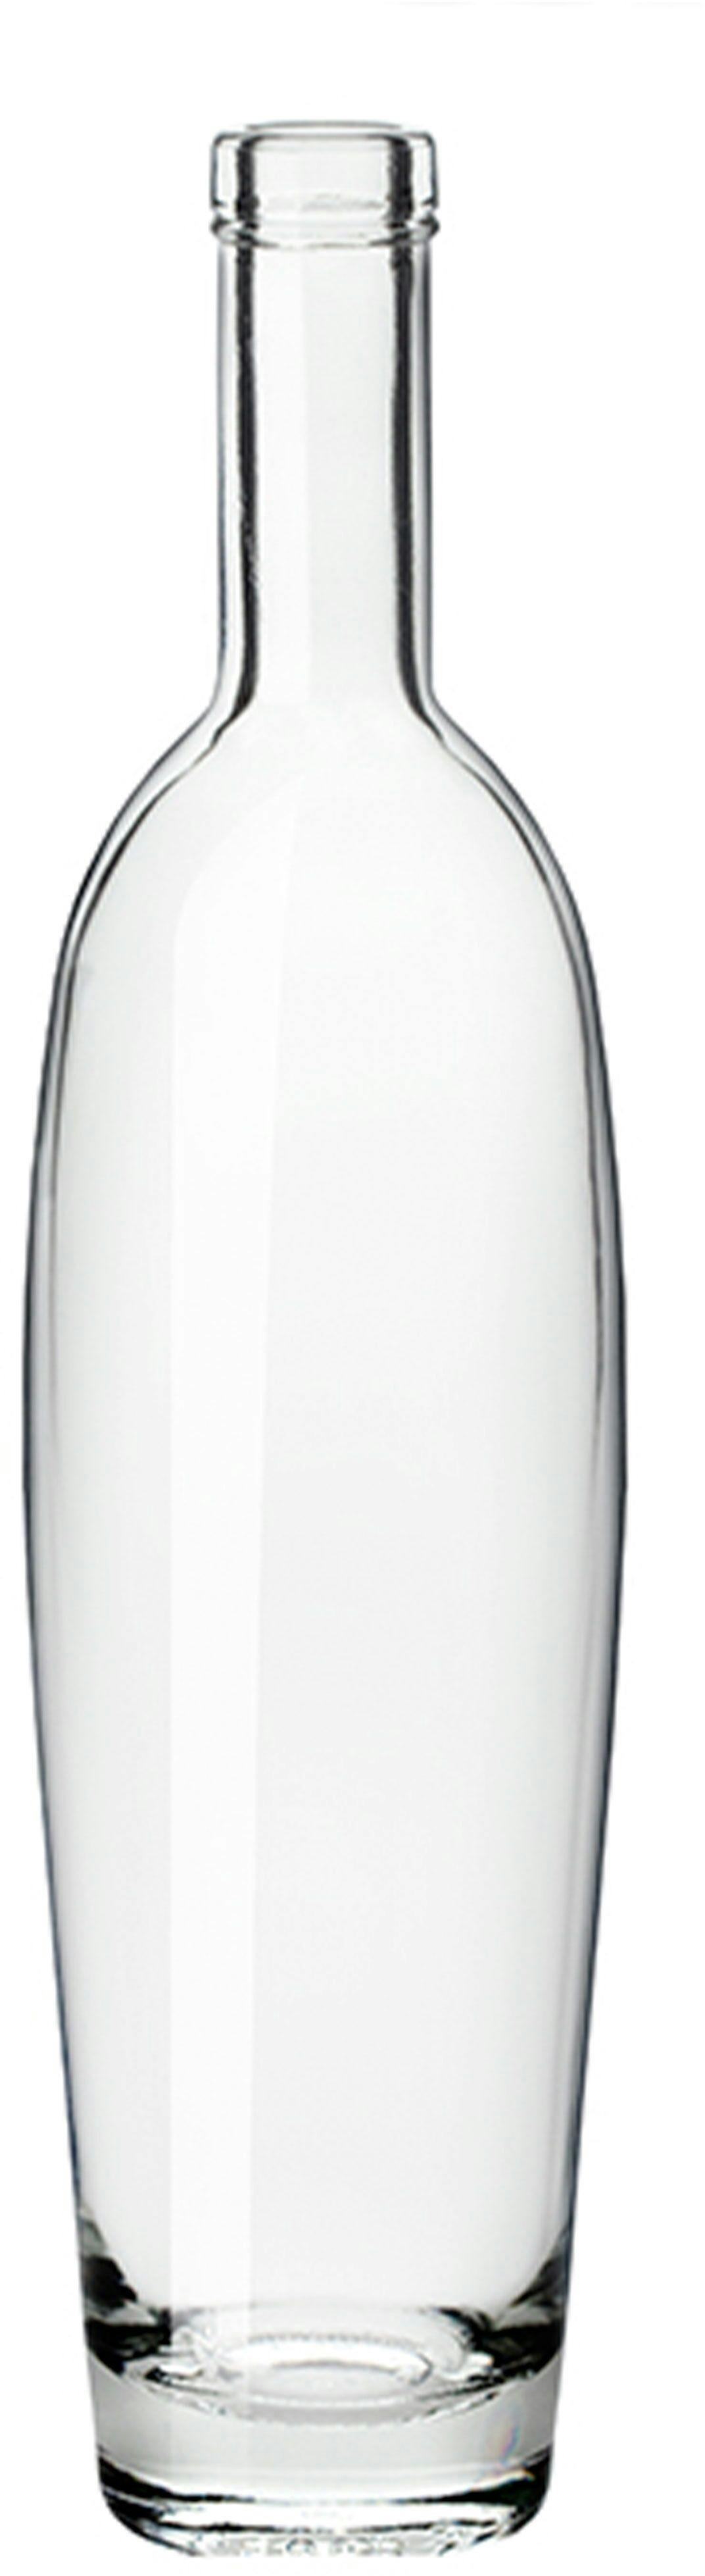 Bottle MODULOR  700 ml BG-Cork